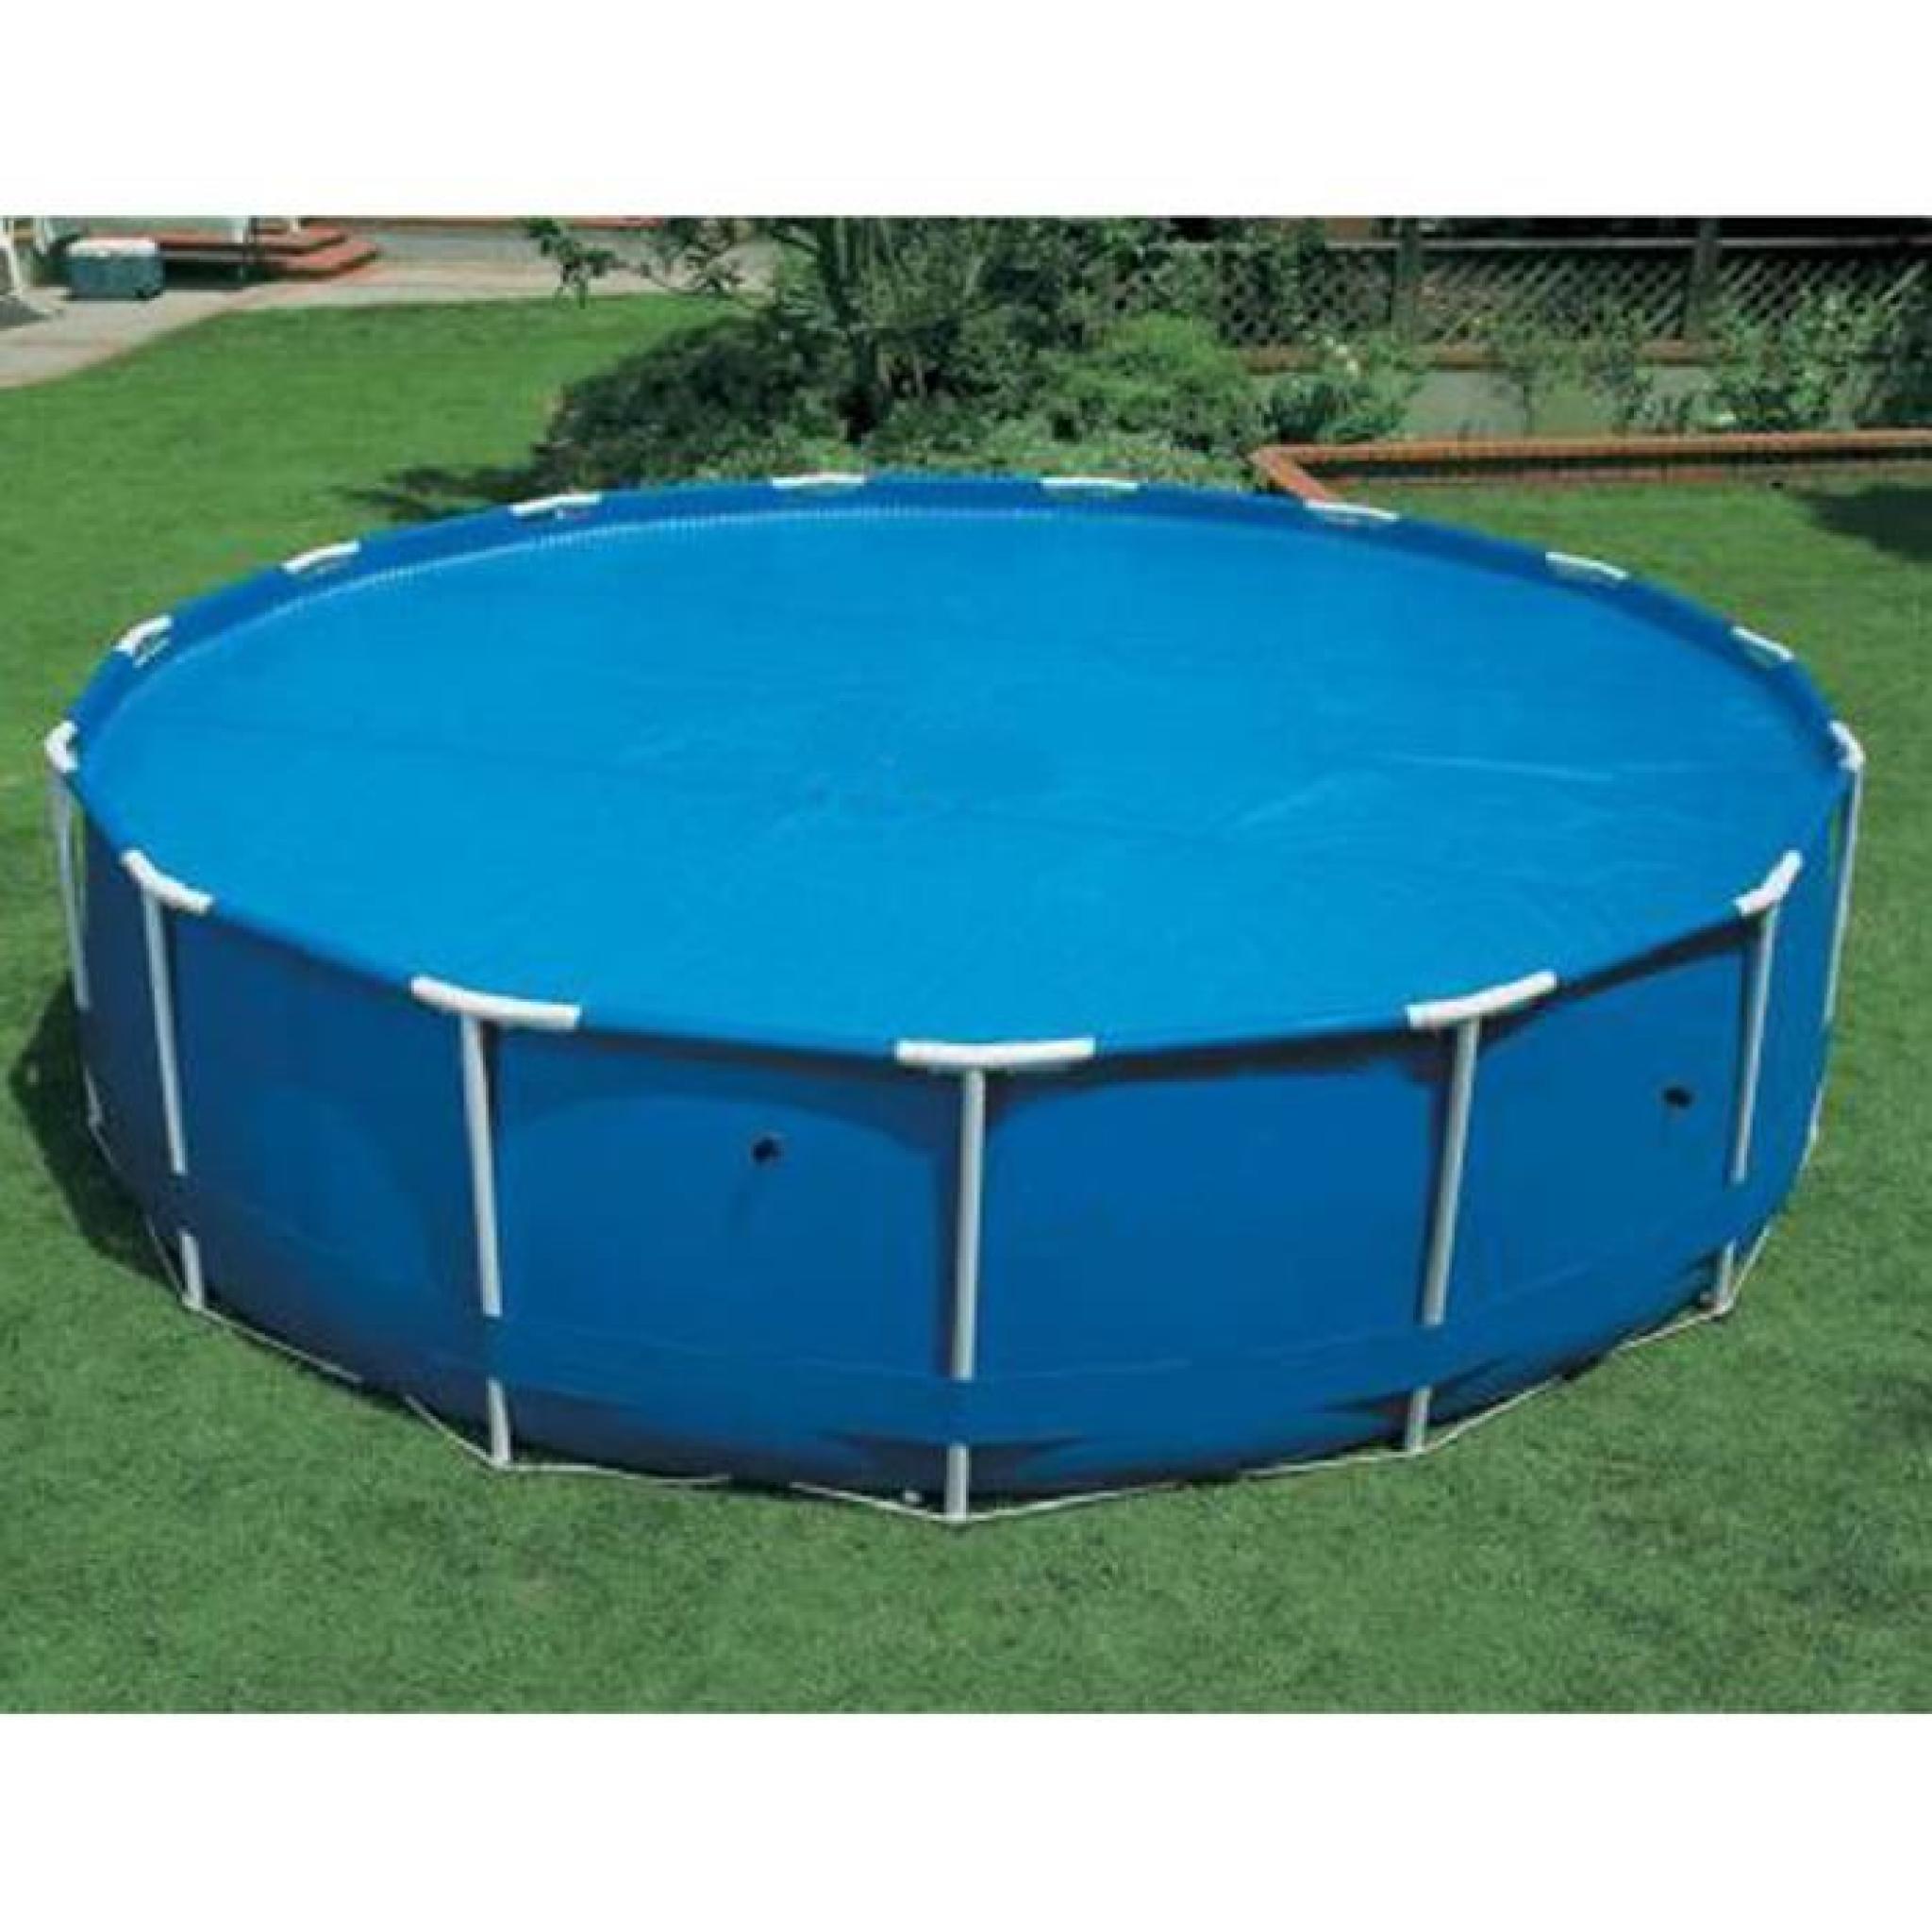 Bache à bulles pour piscine diamètre 3,66m, L.36.80 x l.26.70 x h.37.50 cm